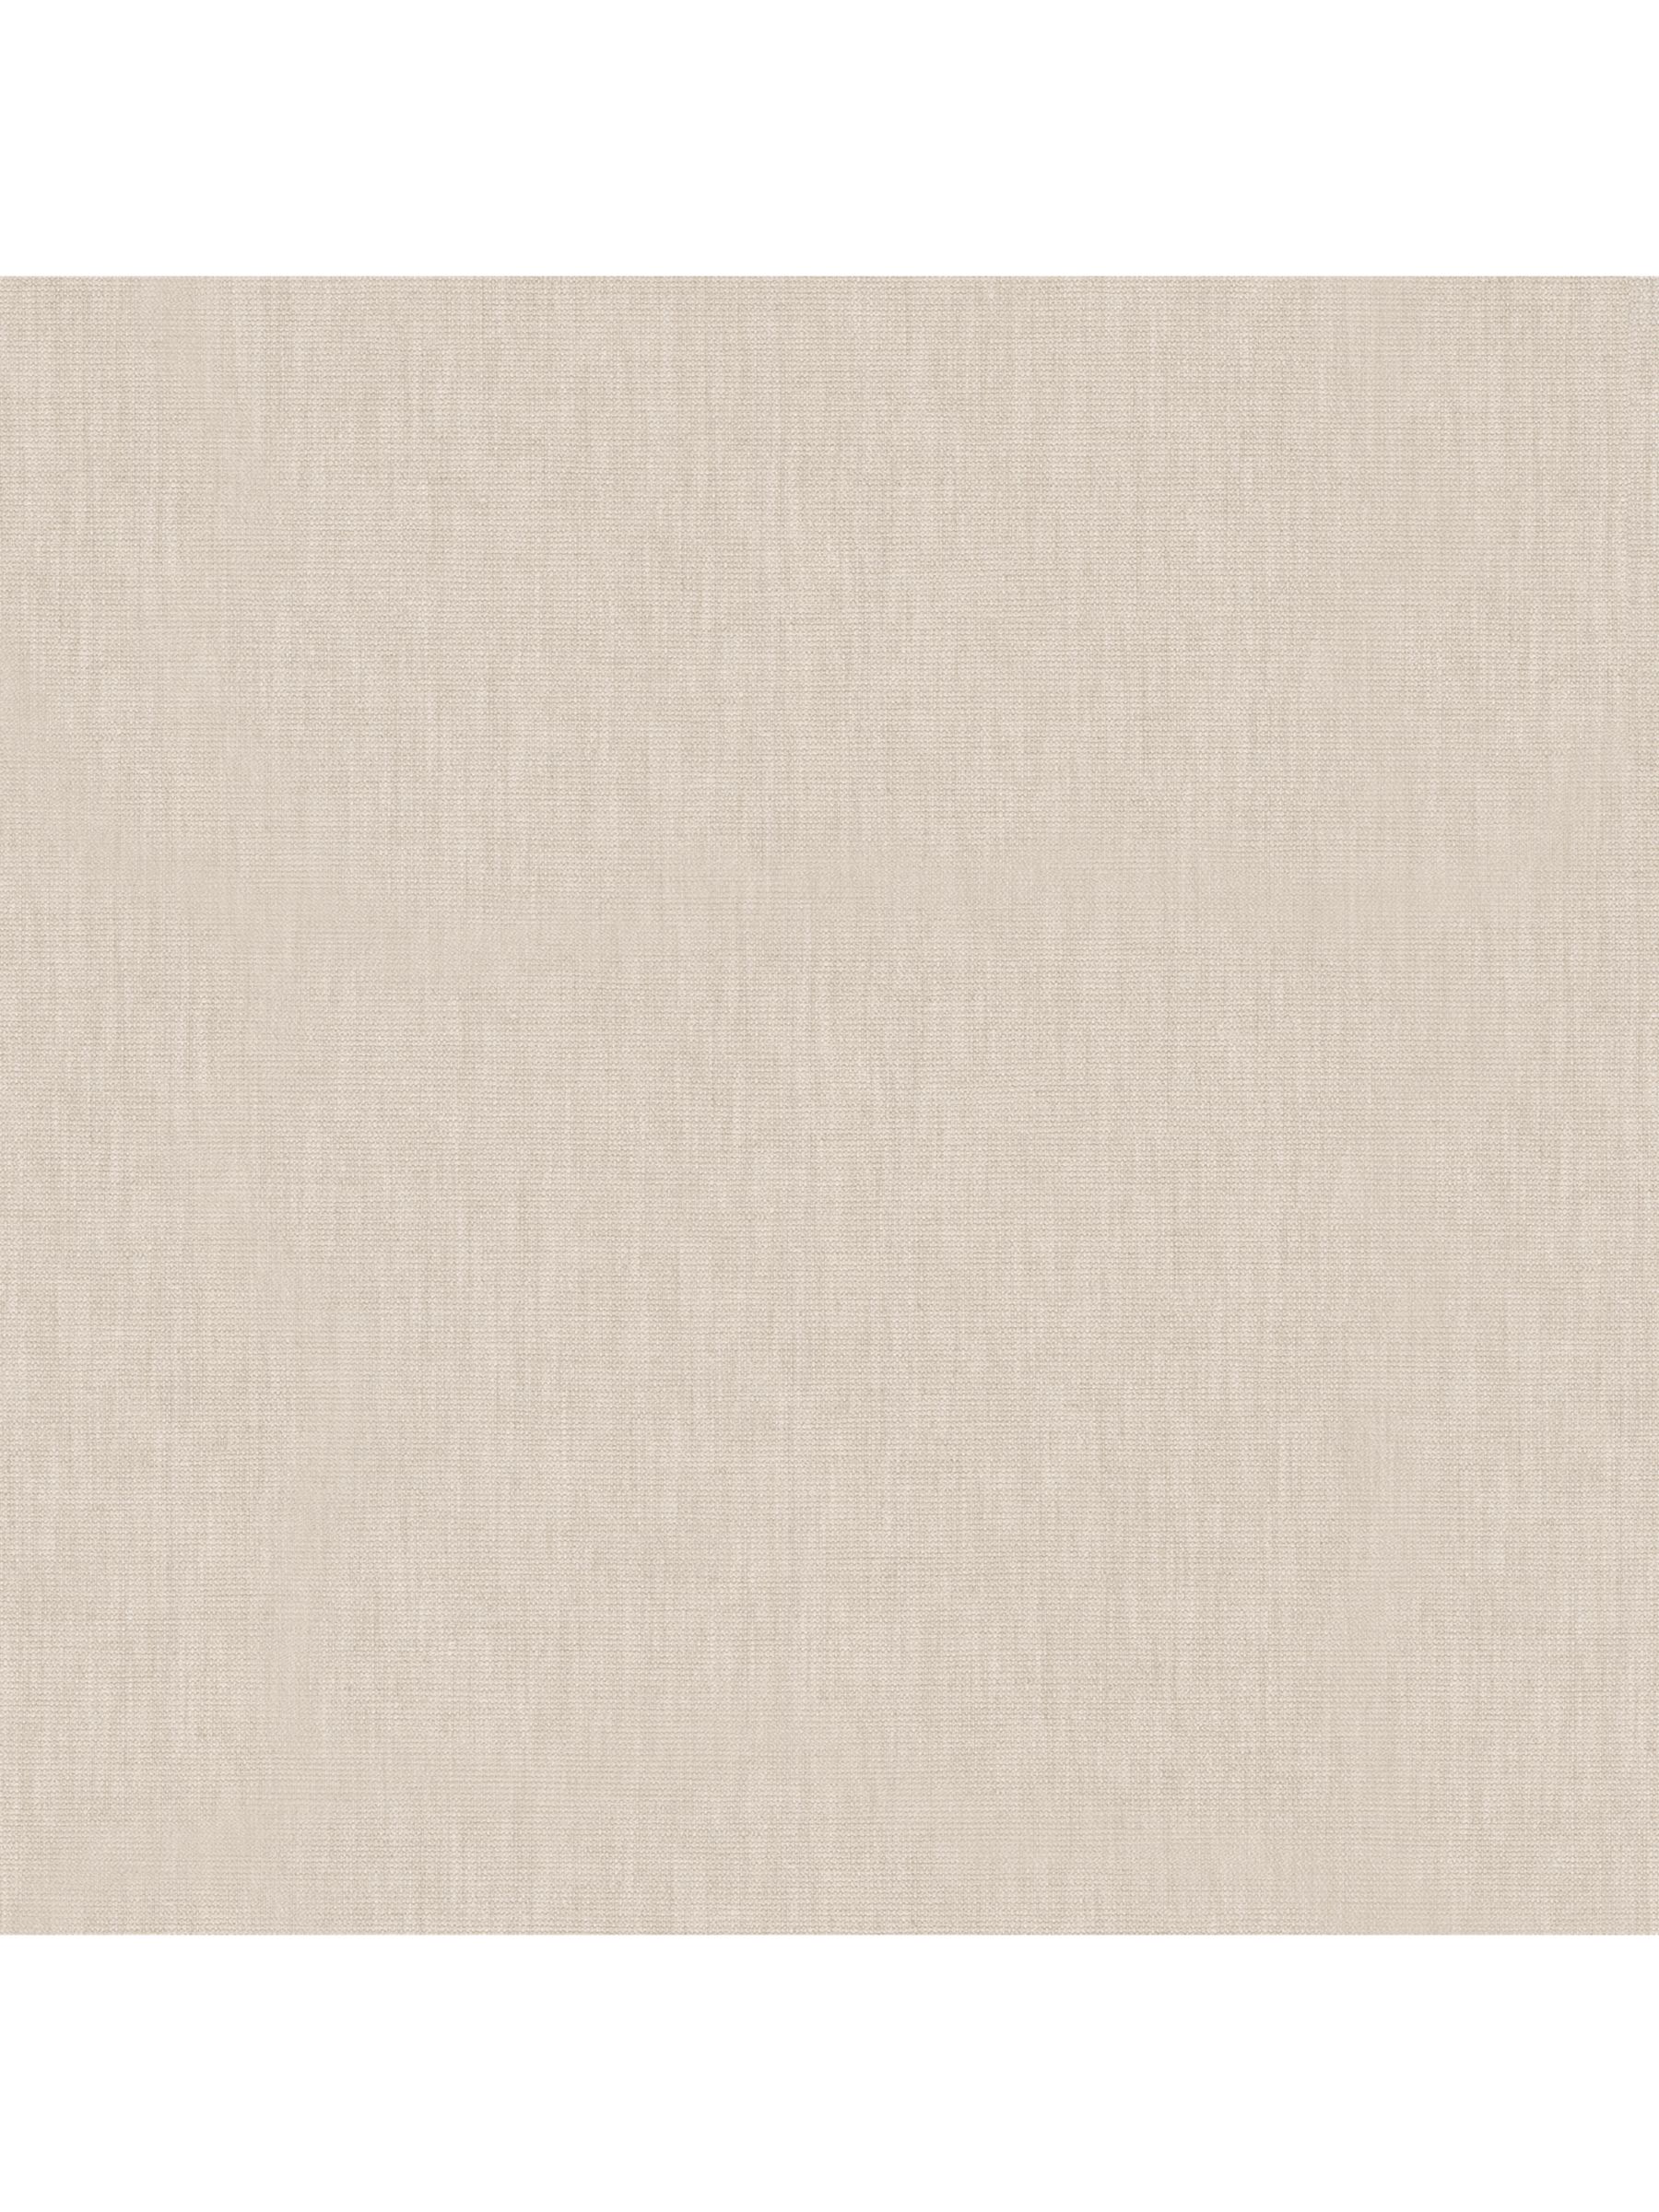 Galerie Linen Wallpaper, 33327